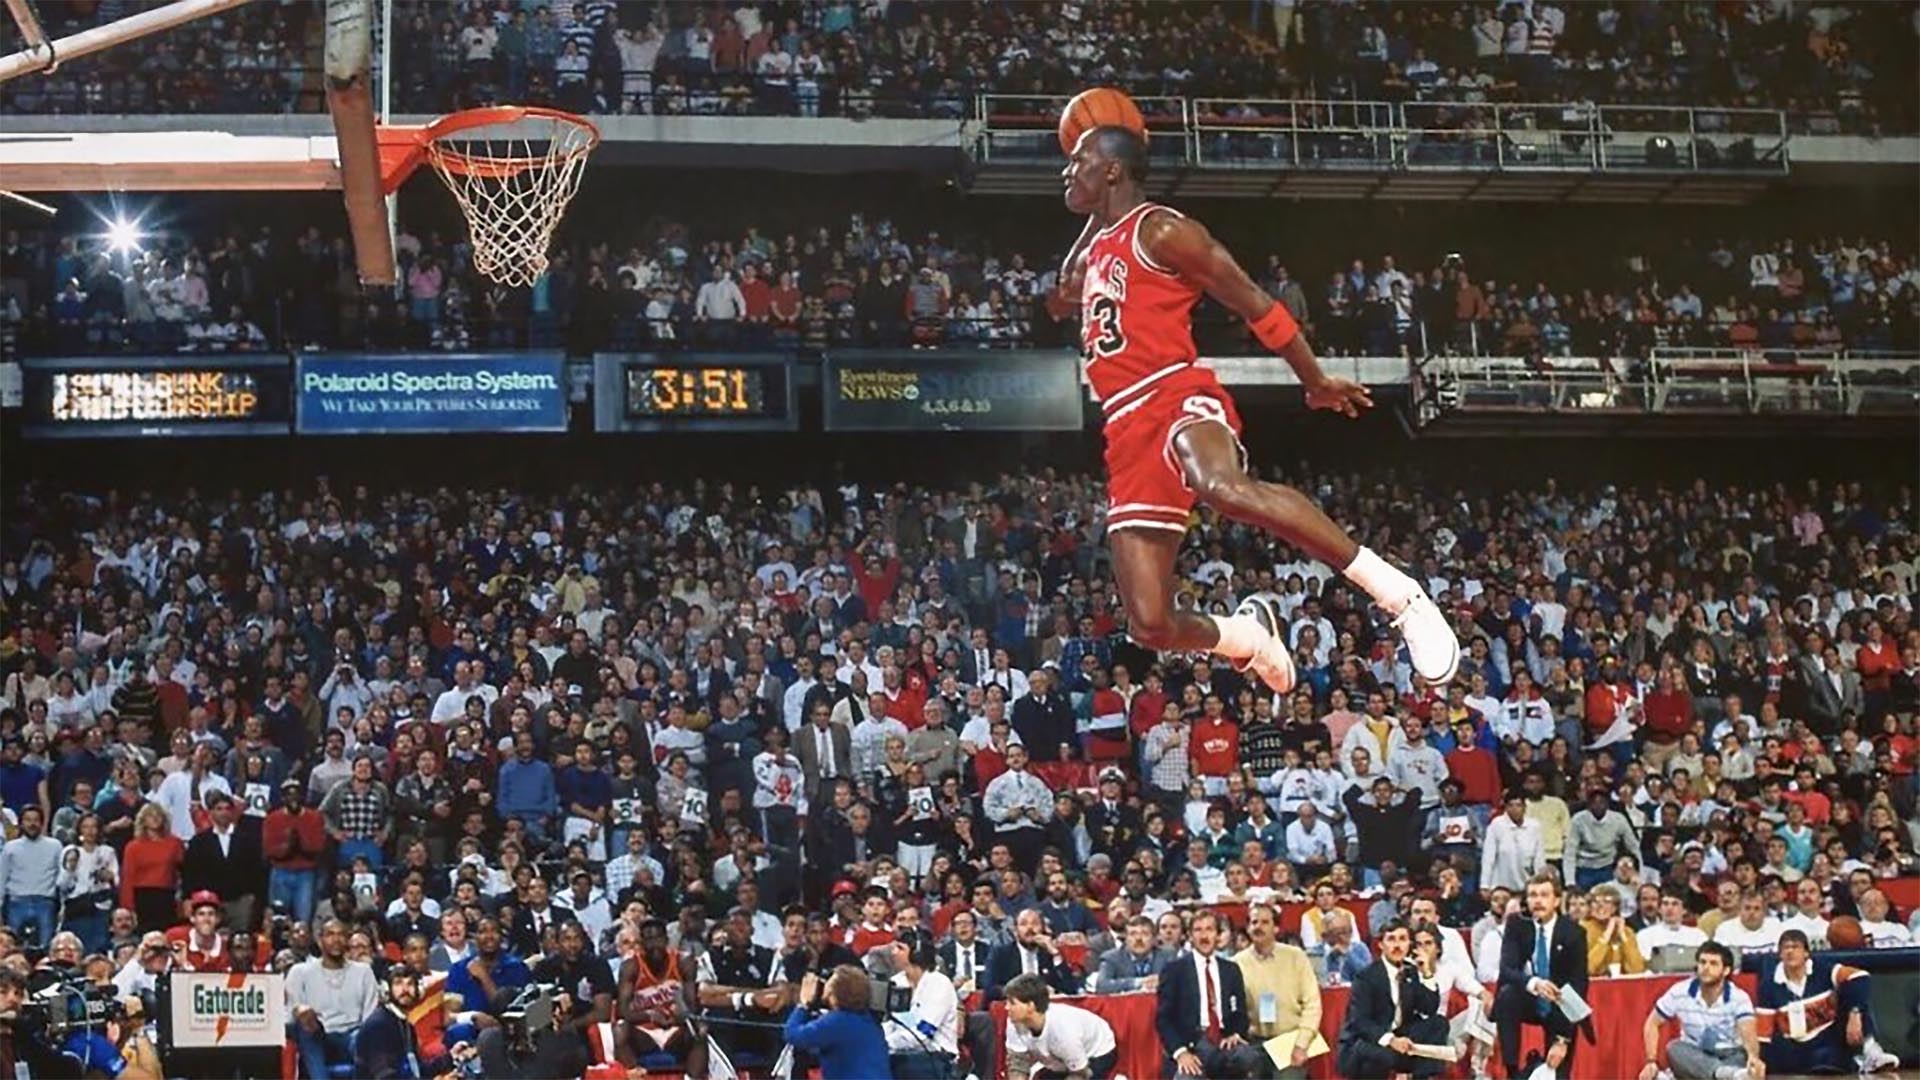 En Este Día: A 32 años del “Air Jordan” (VIDEO) - UNANIMO Deportes